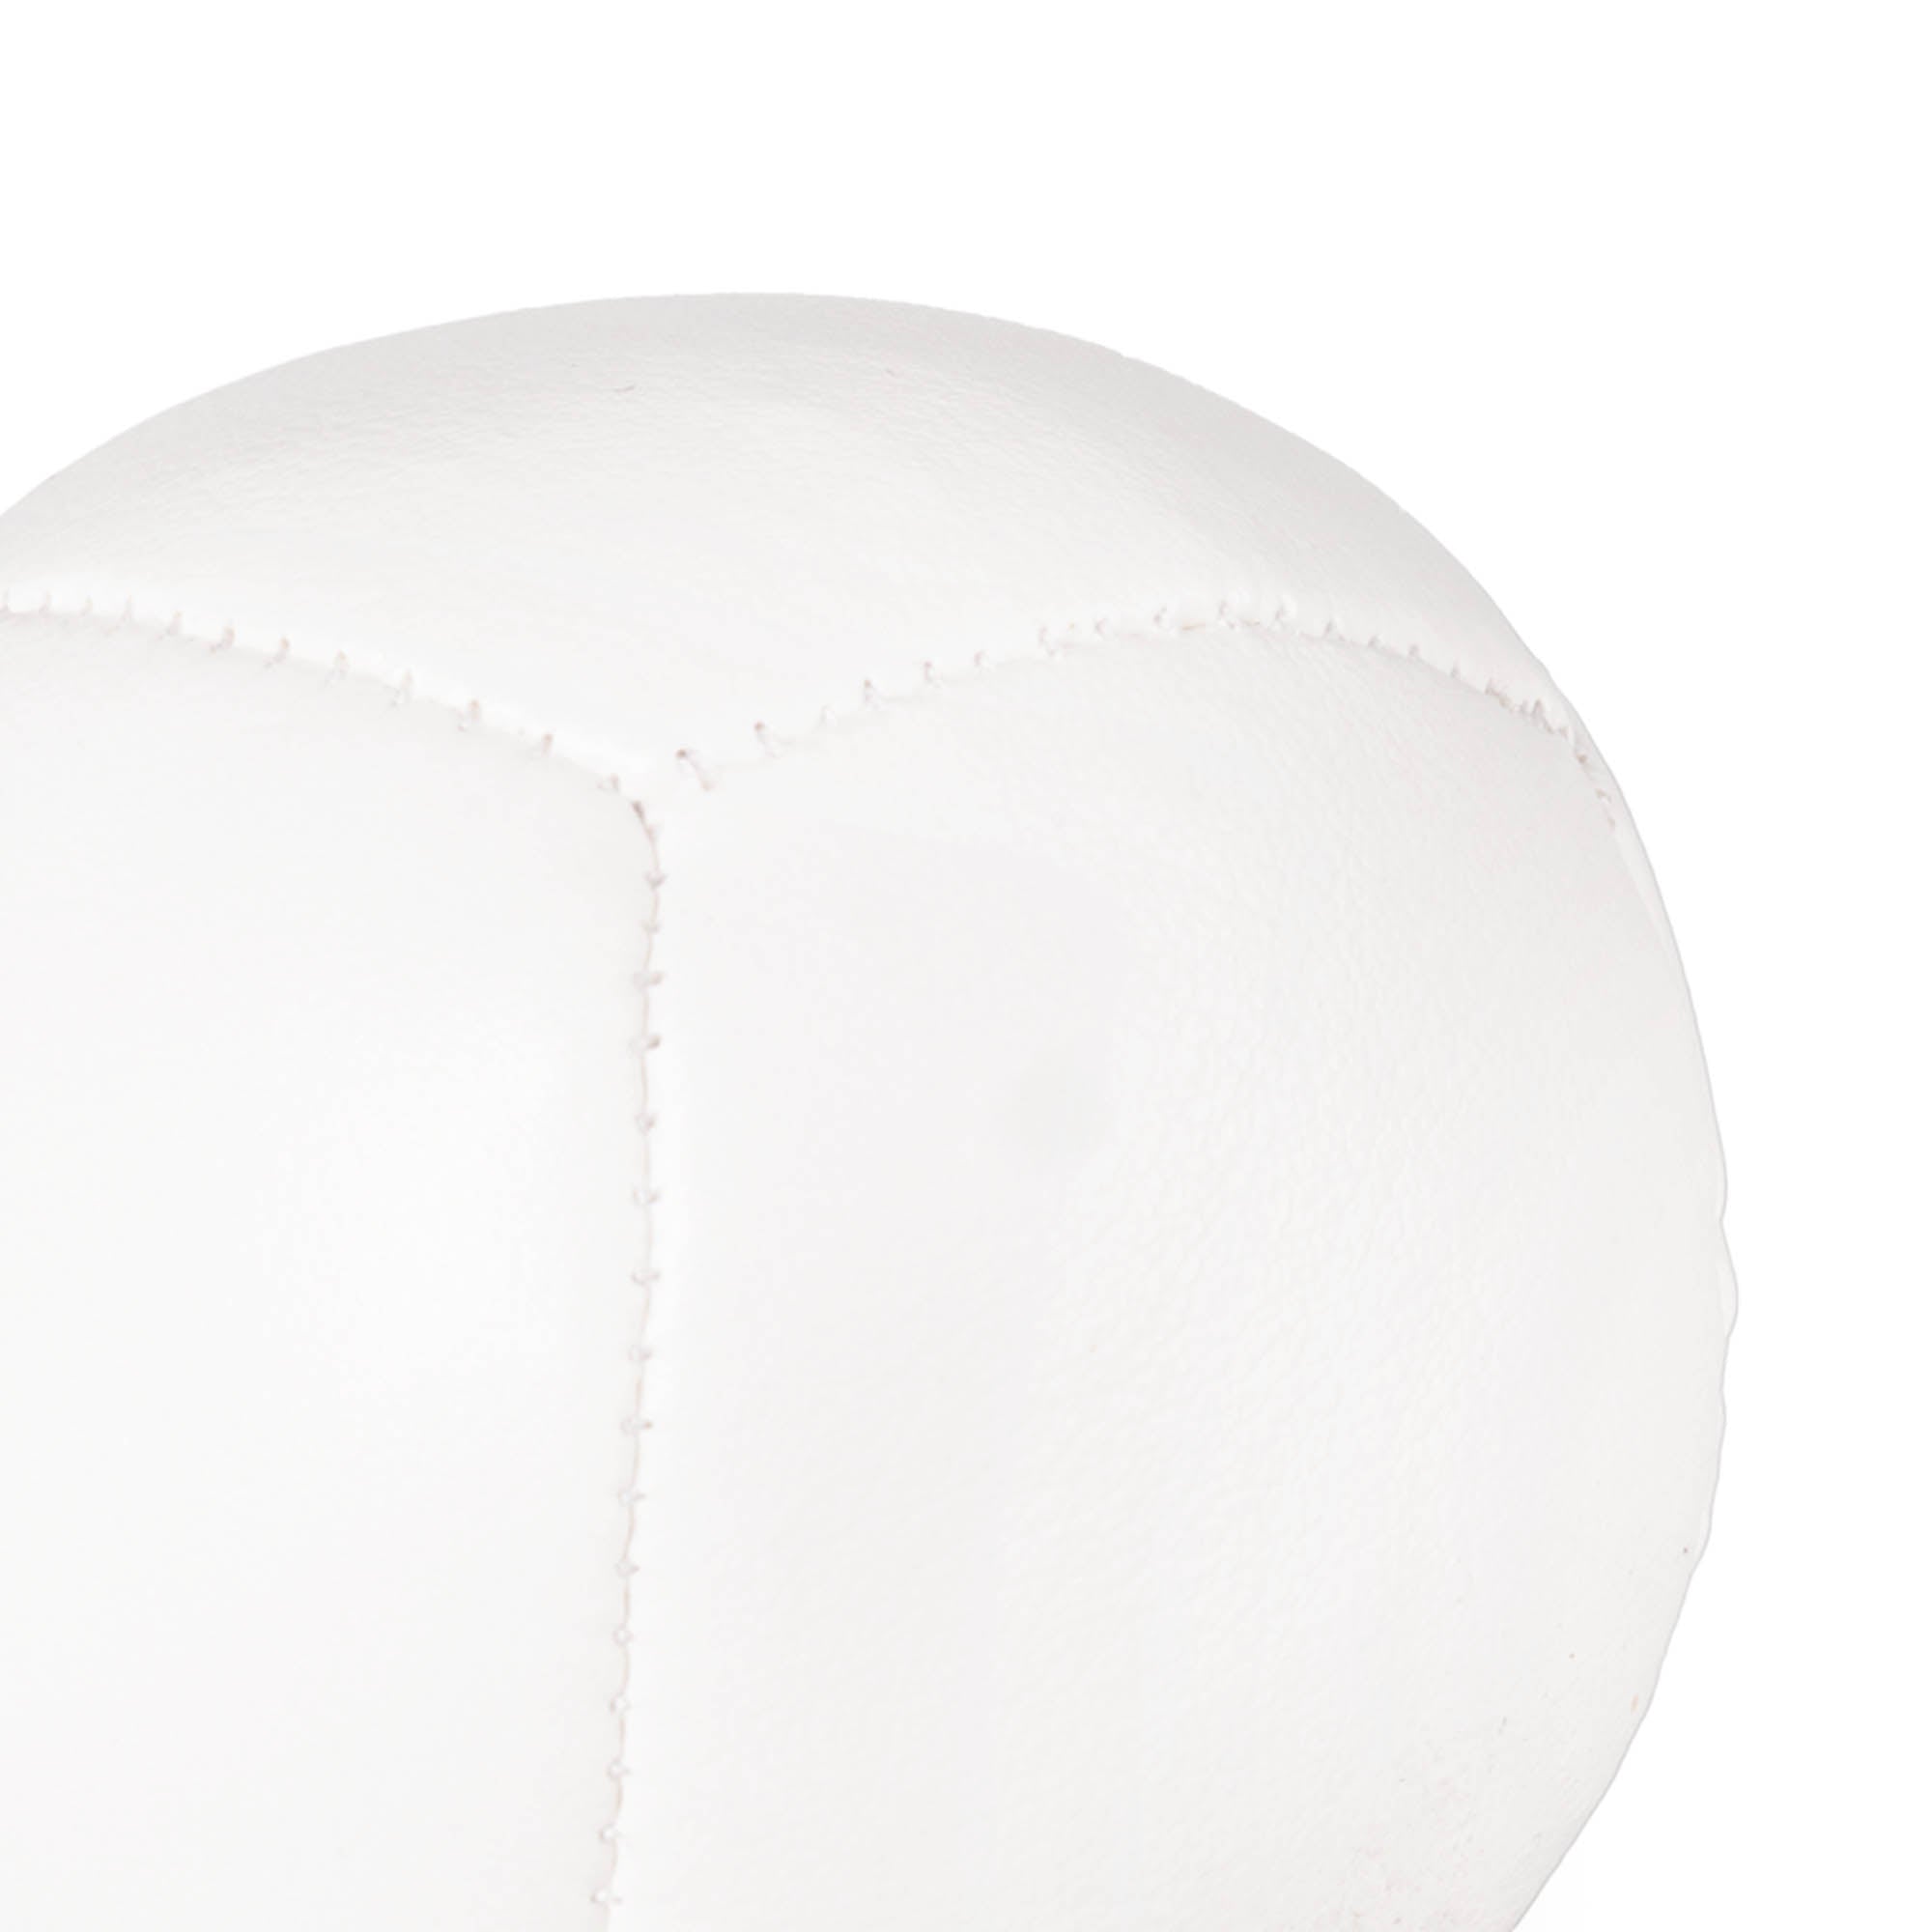 Firetoys 110g thud juggling ball, close up stitching white